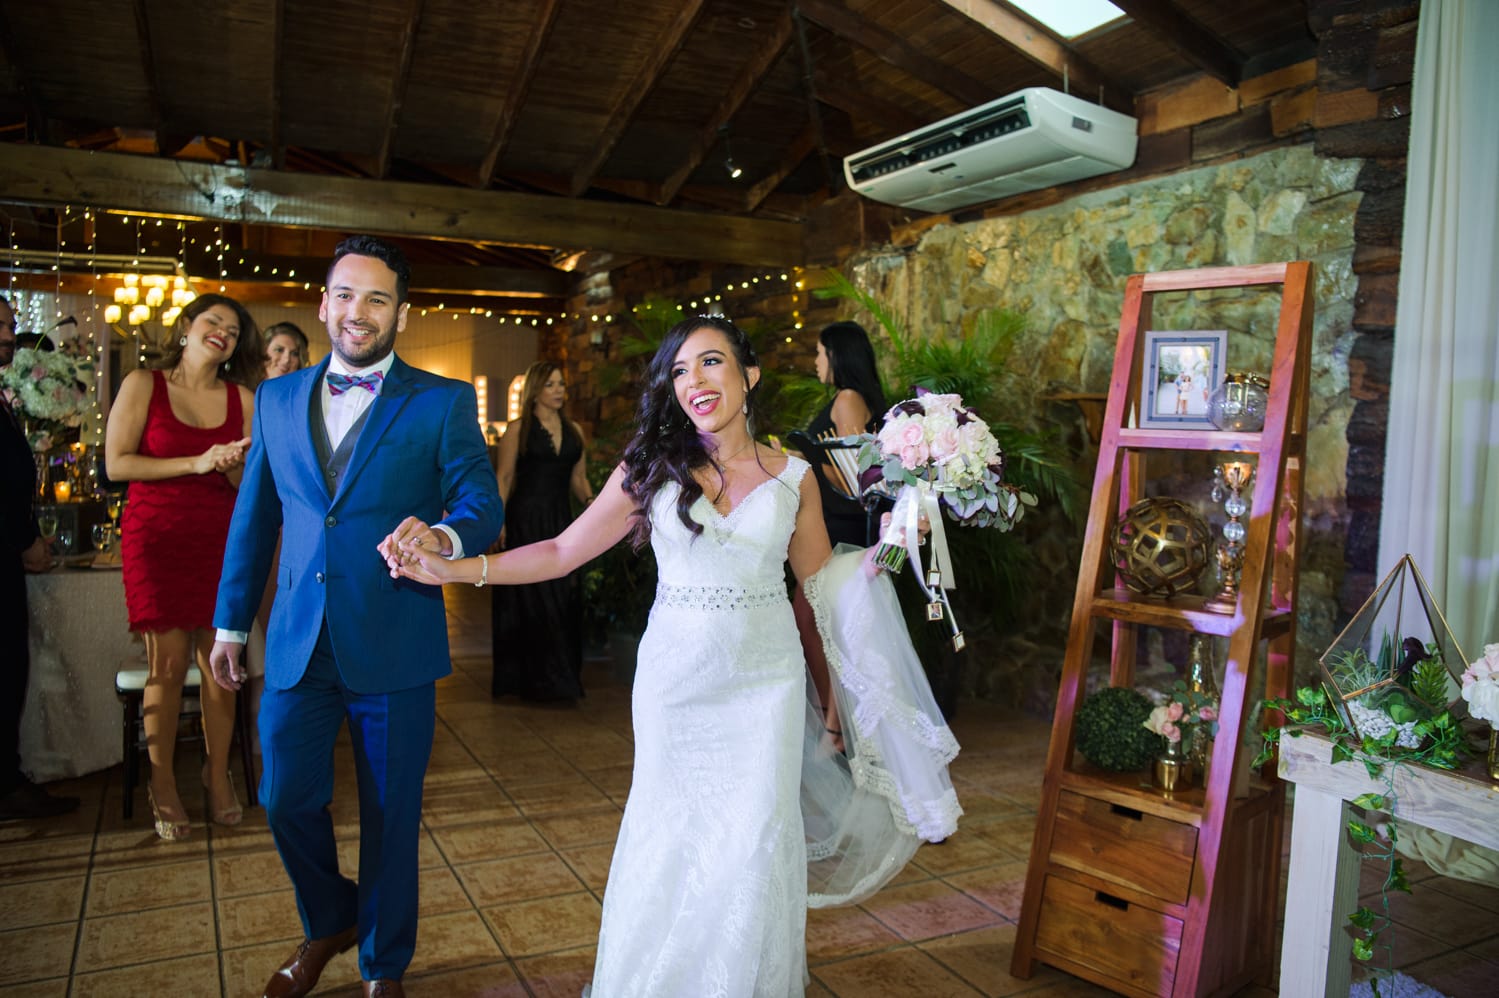 Fotografa de Puerto Rico Camille Fontanez captura la boda rustica al aire libre de Damara y Kevin en centro de actividades El Bungalow en Aguada